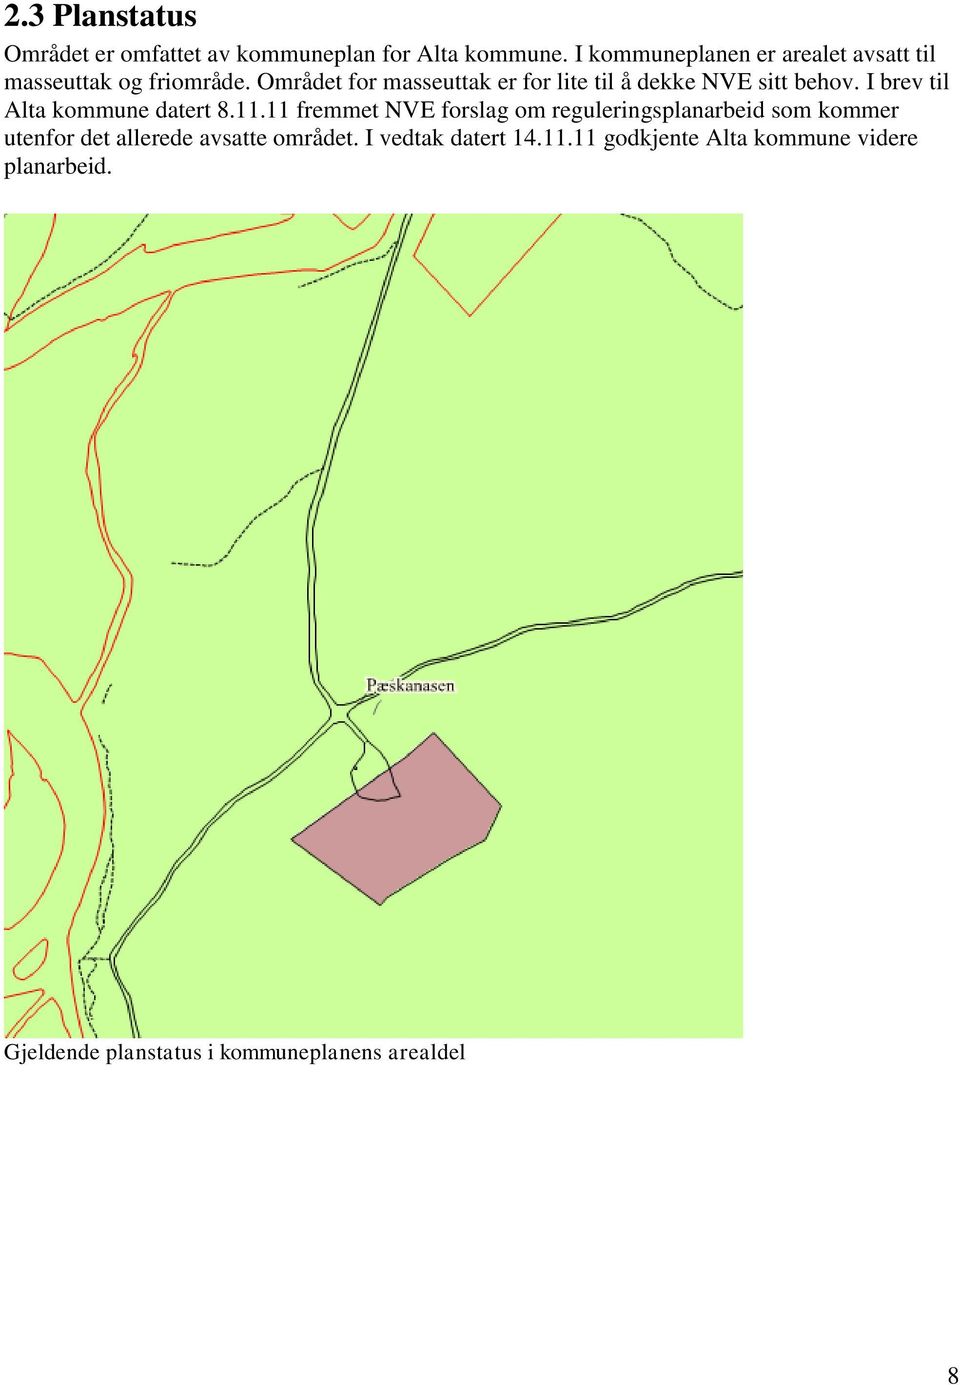 Området for masseuttak er for lite til å dekke NVE sitt behov. I brev til Alta kommune datert 8.11.